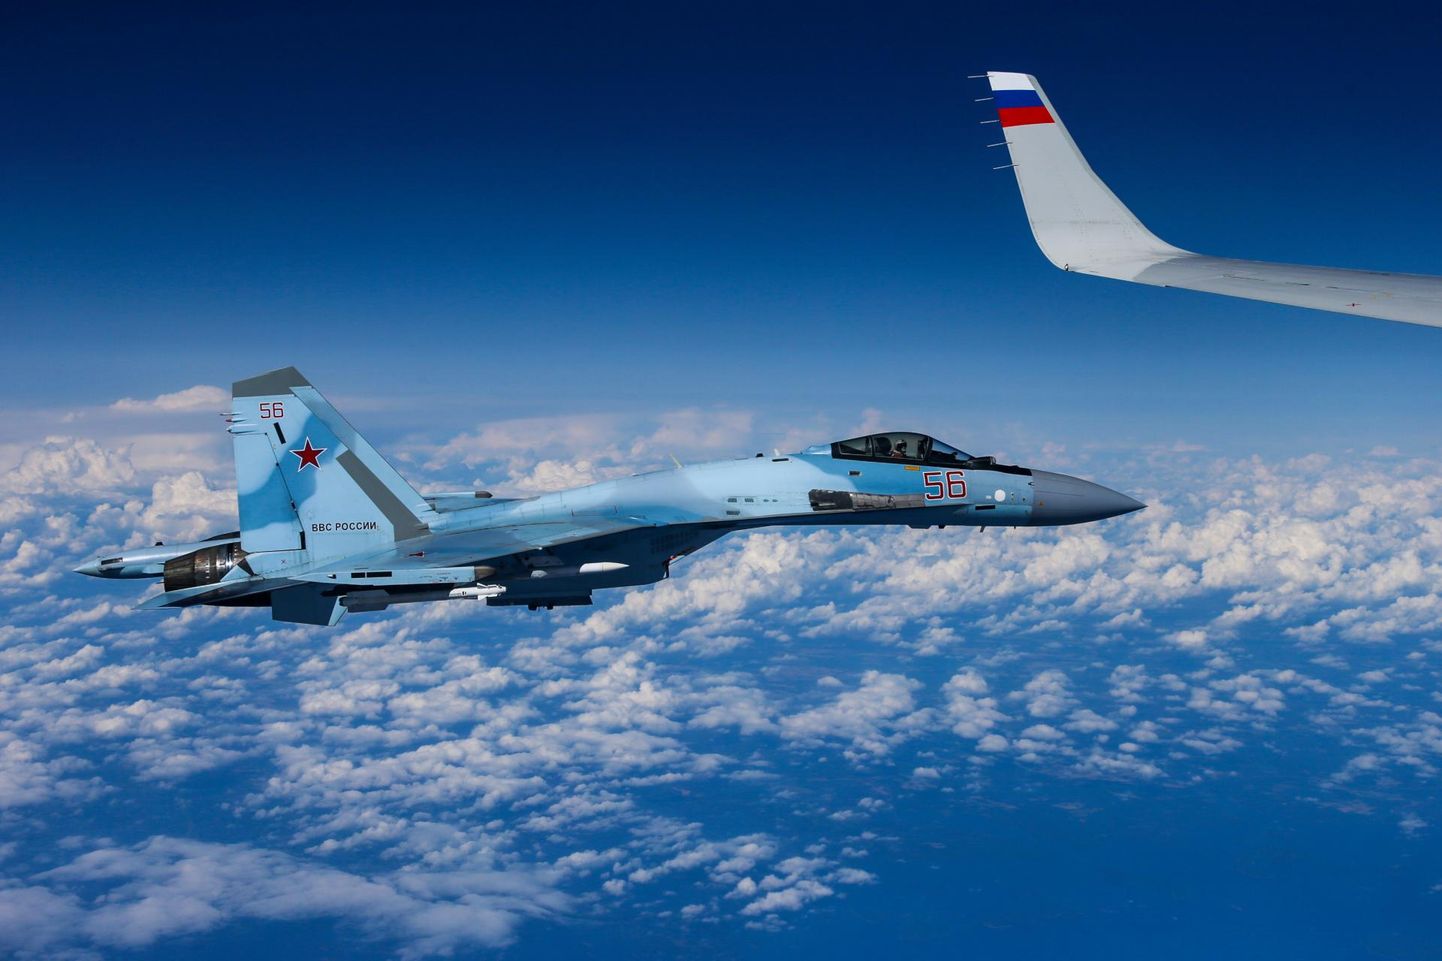 Vene sõjalennukid on tekitanud ohtlikke olukordi, minnes reisilennukitele liiga lähedale.